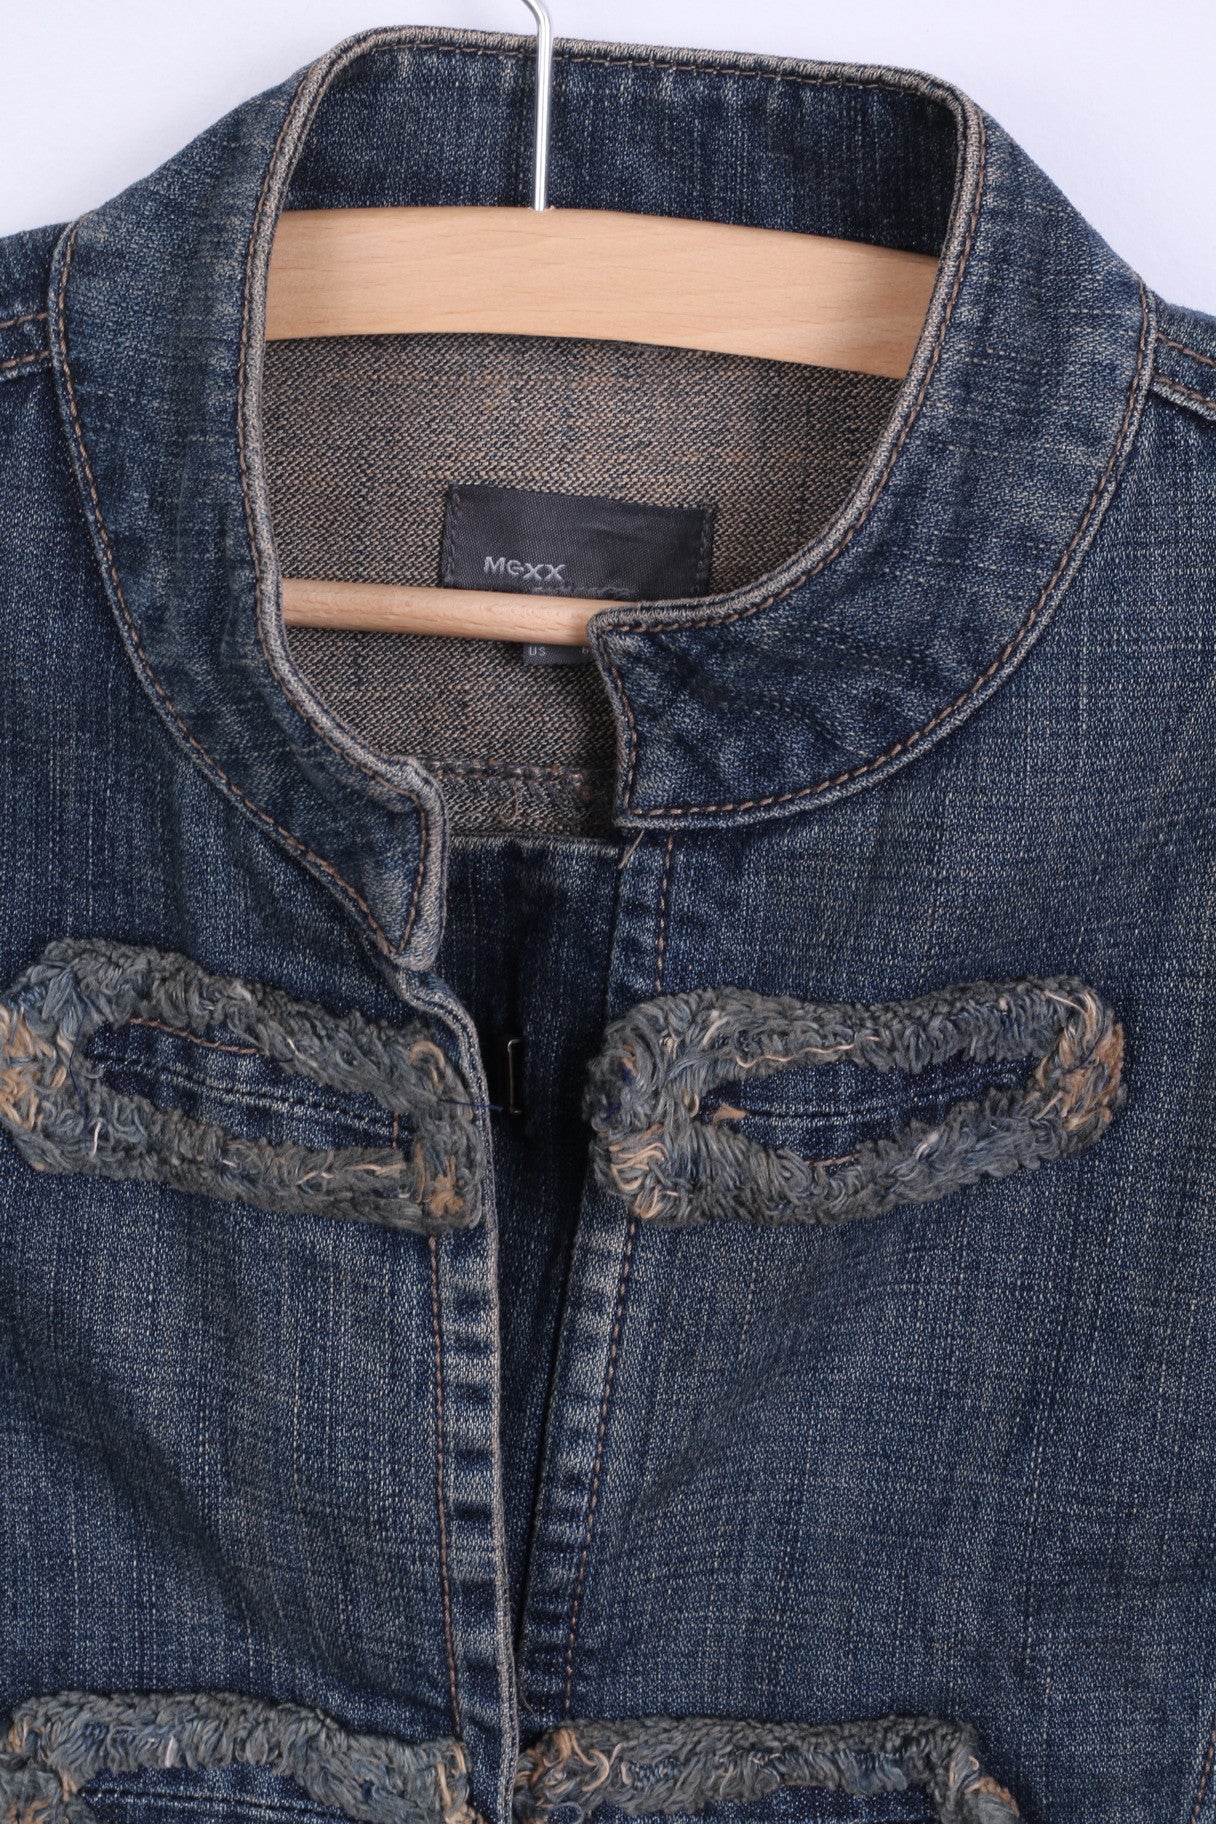 MEXX Womens S 10 Denim Jacket Blue Vintage Cotton Jeans